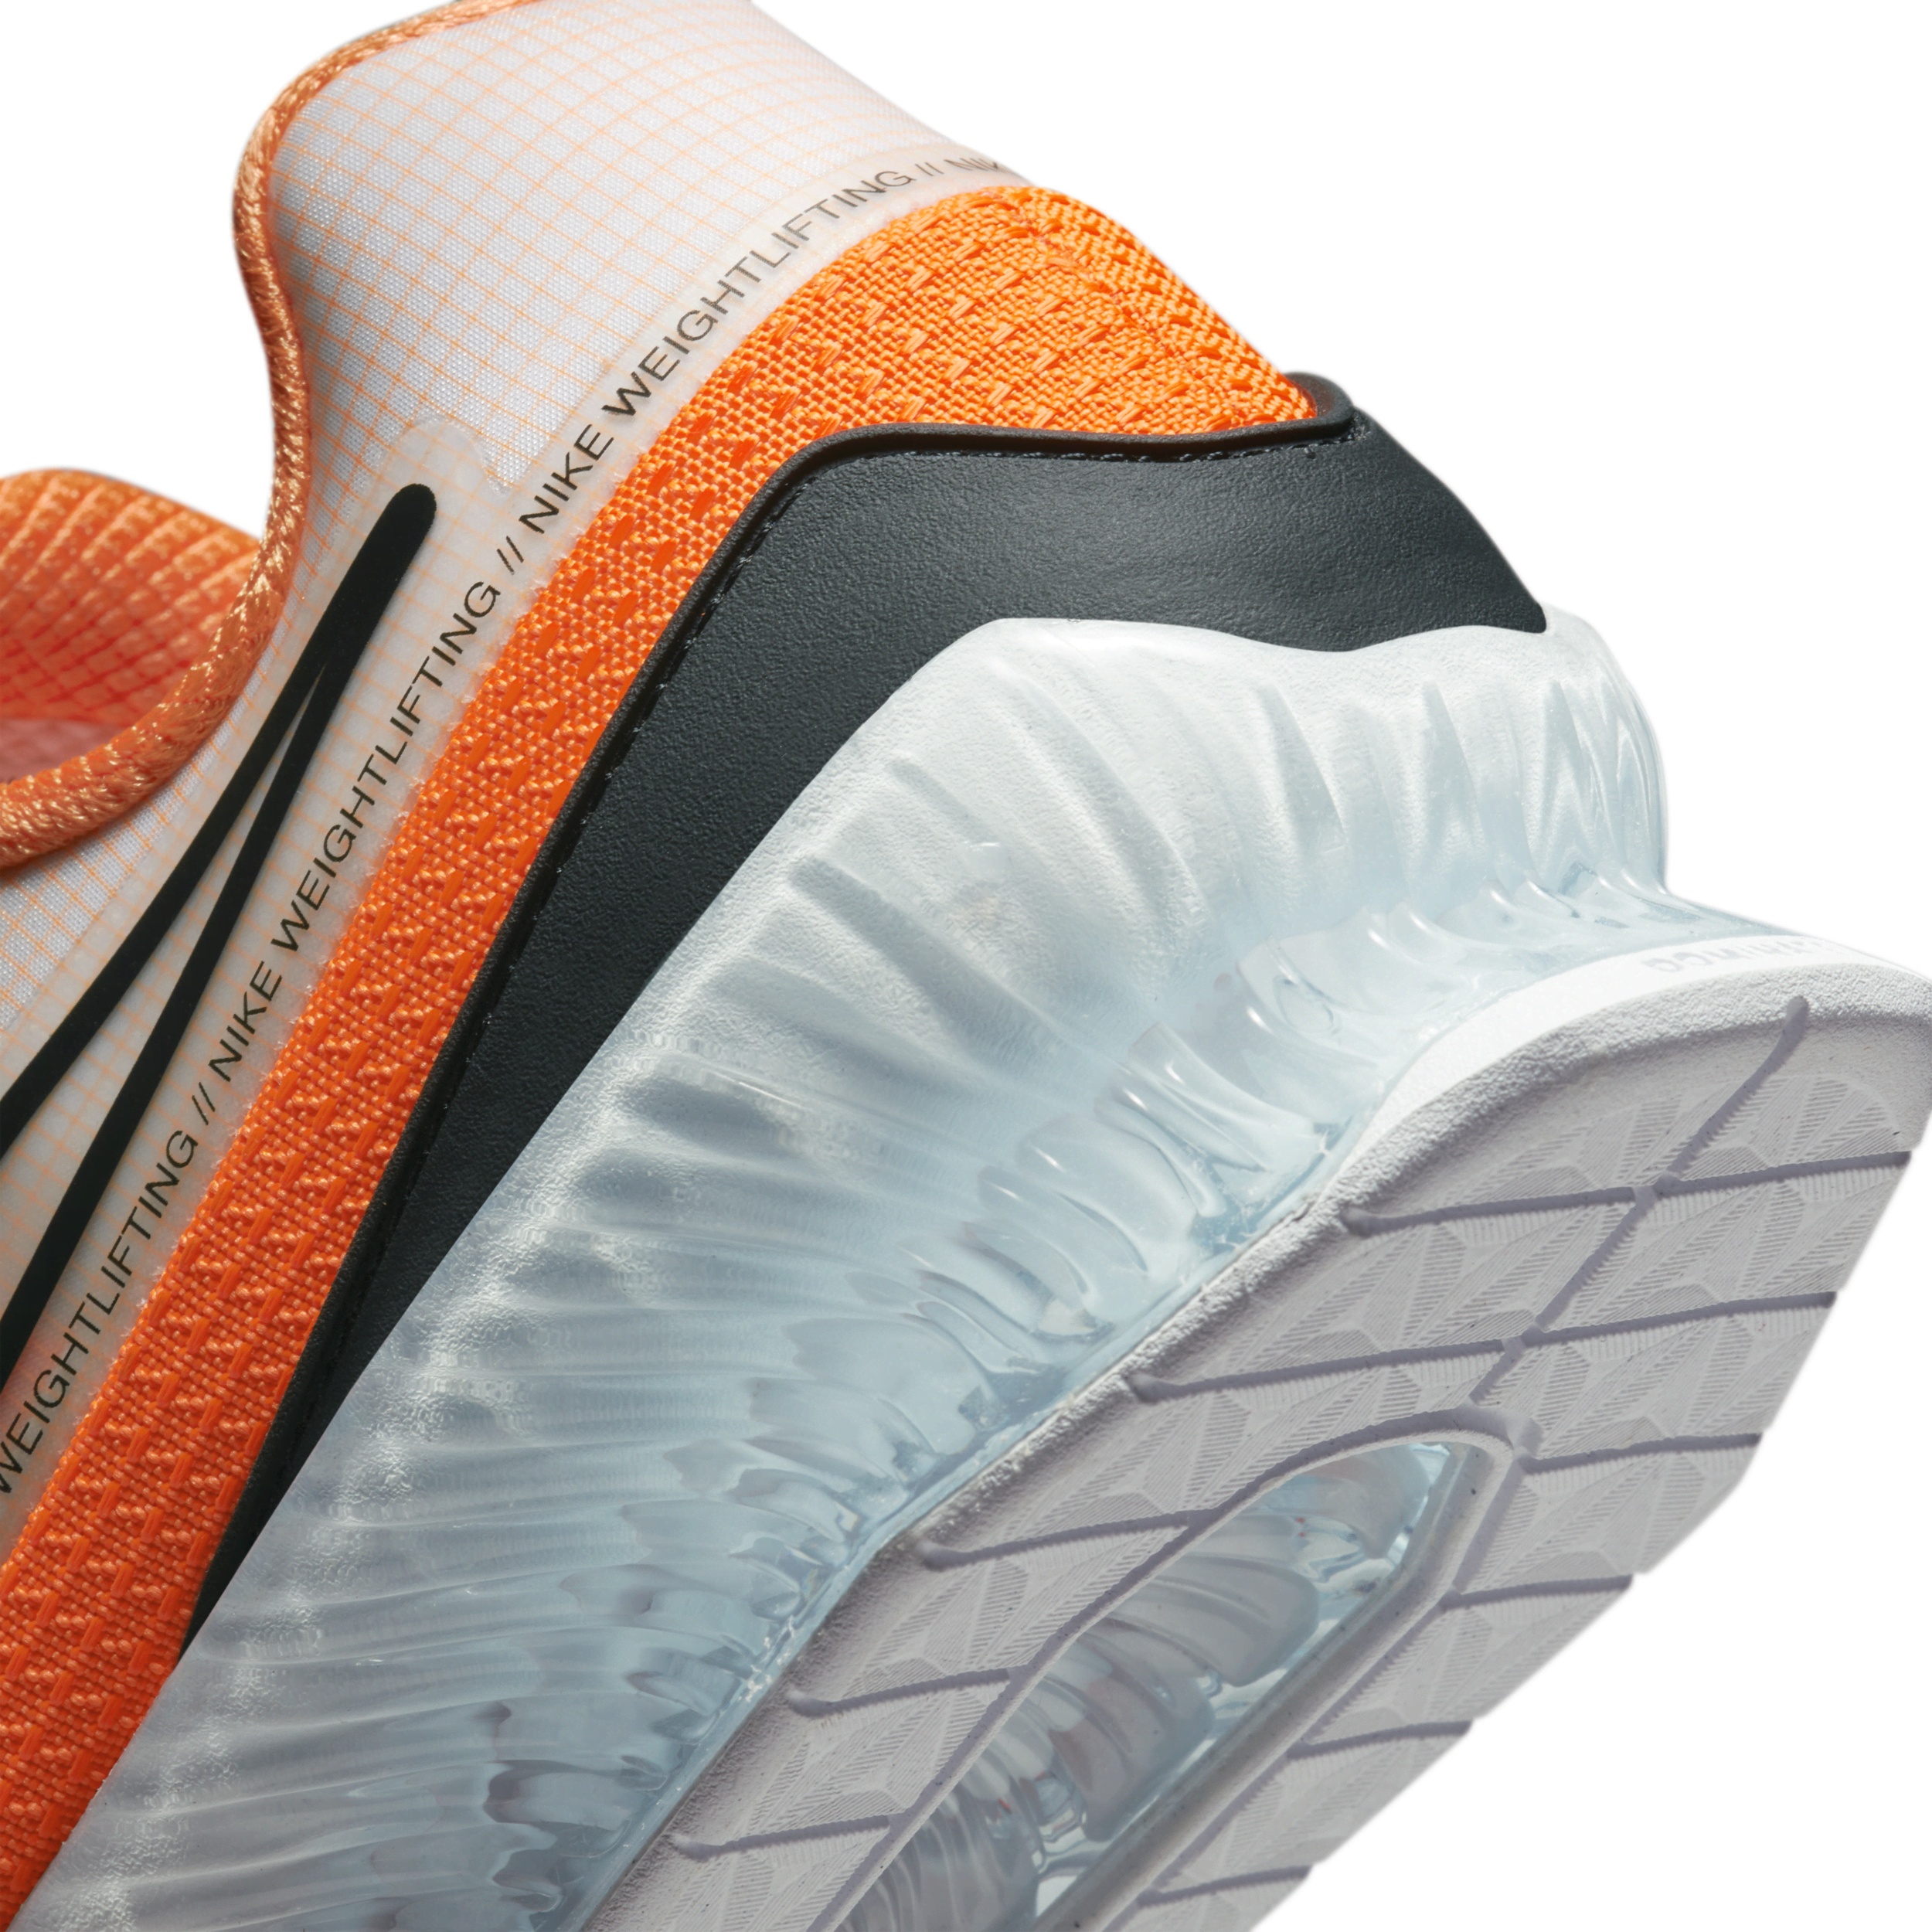 Nike Unisex Romaleos 4 Weightlifting Shoes - 8